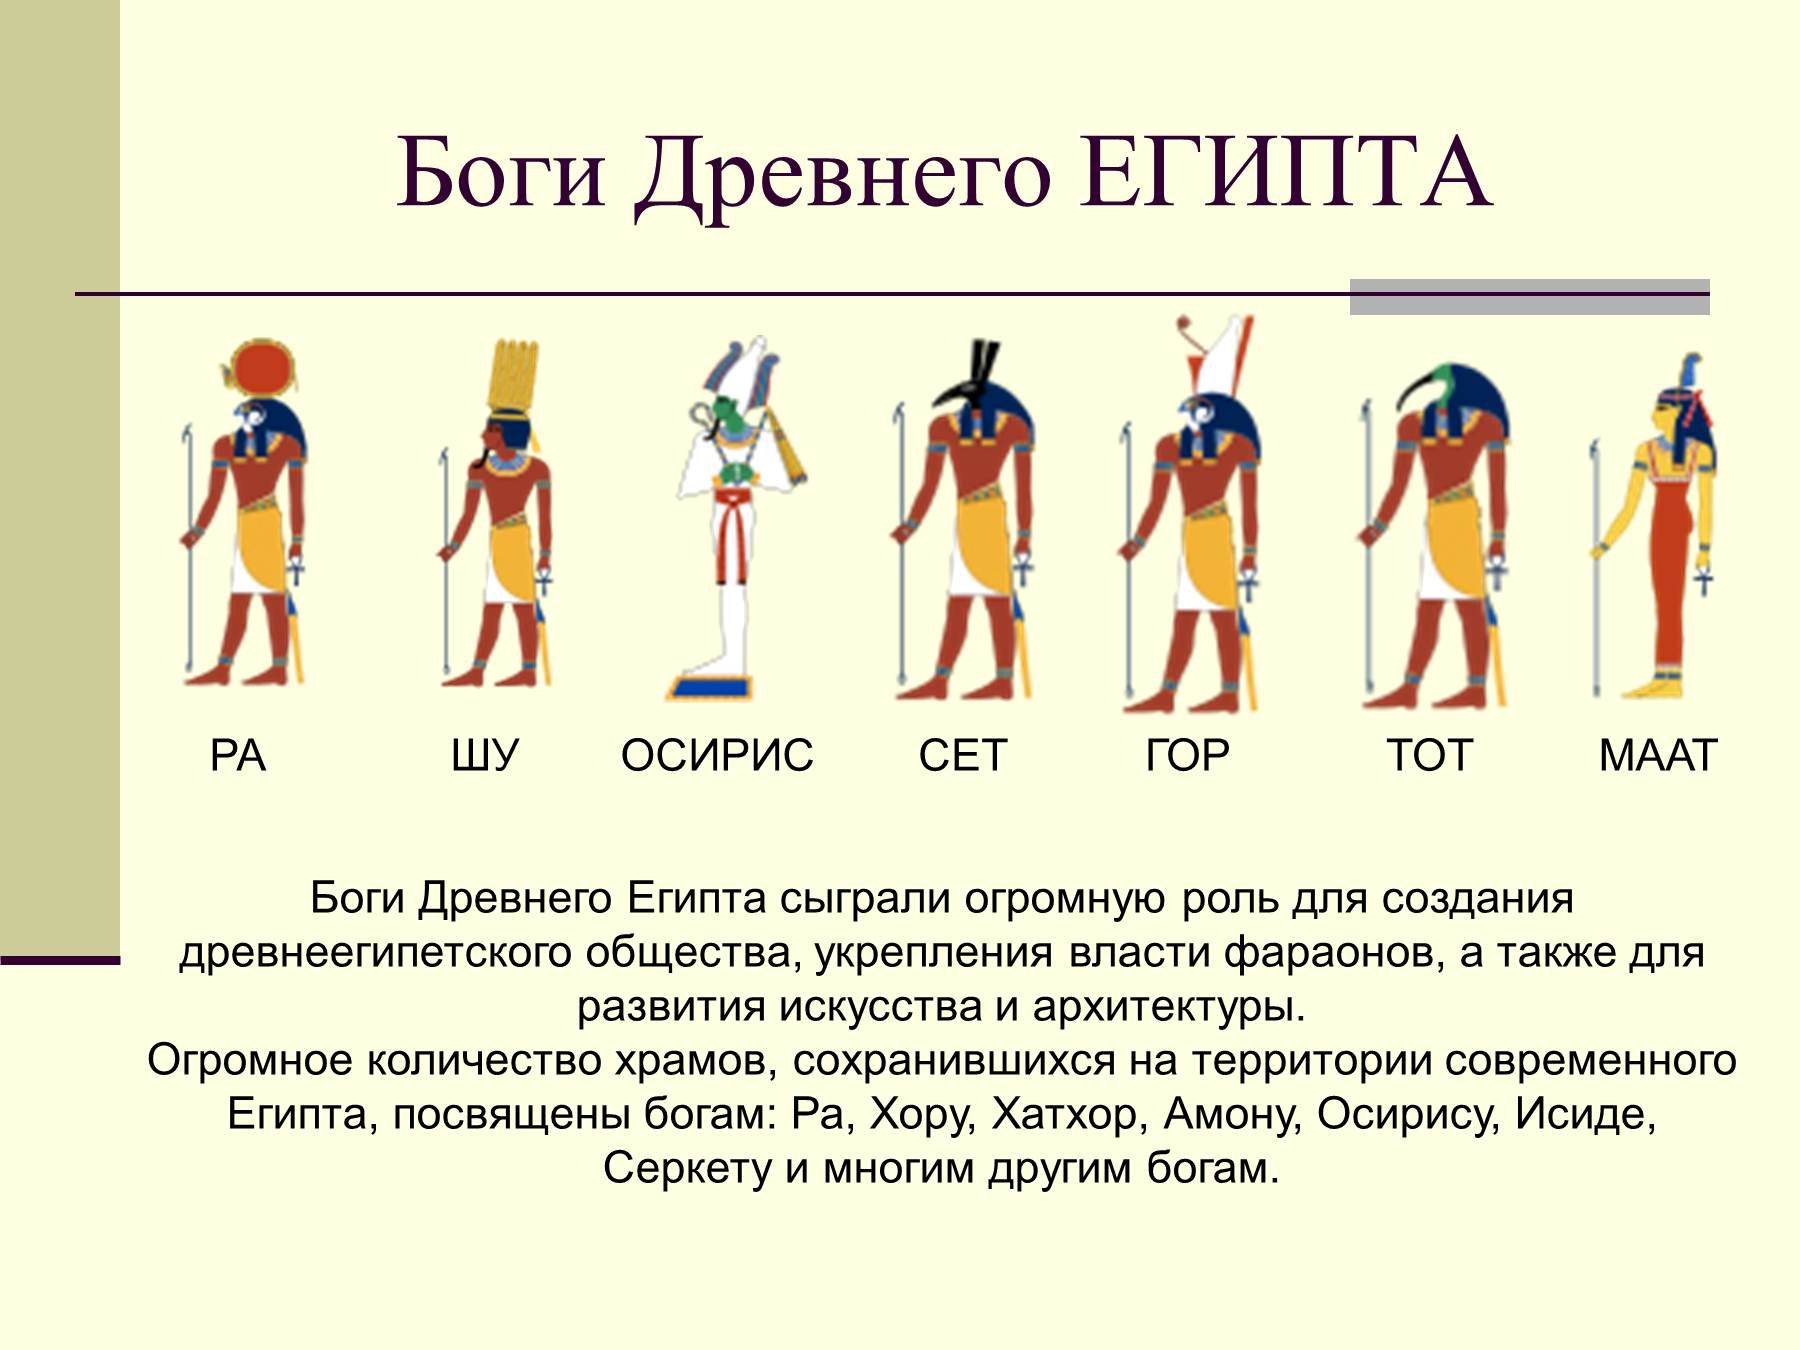 Богом древнего египта был. Боги древнего Египта 5 класс история. Древнеегипетские боги и их изображения. Боги Египта история древнего Египта 5 класс.